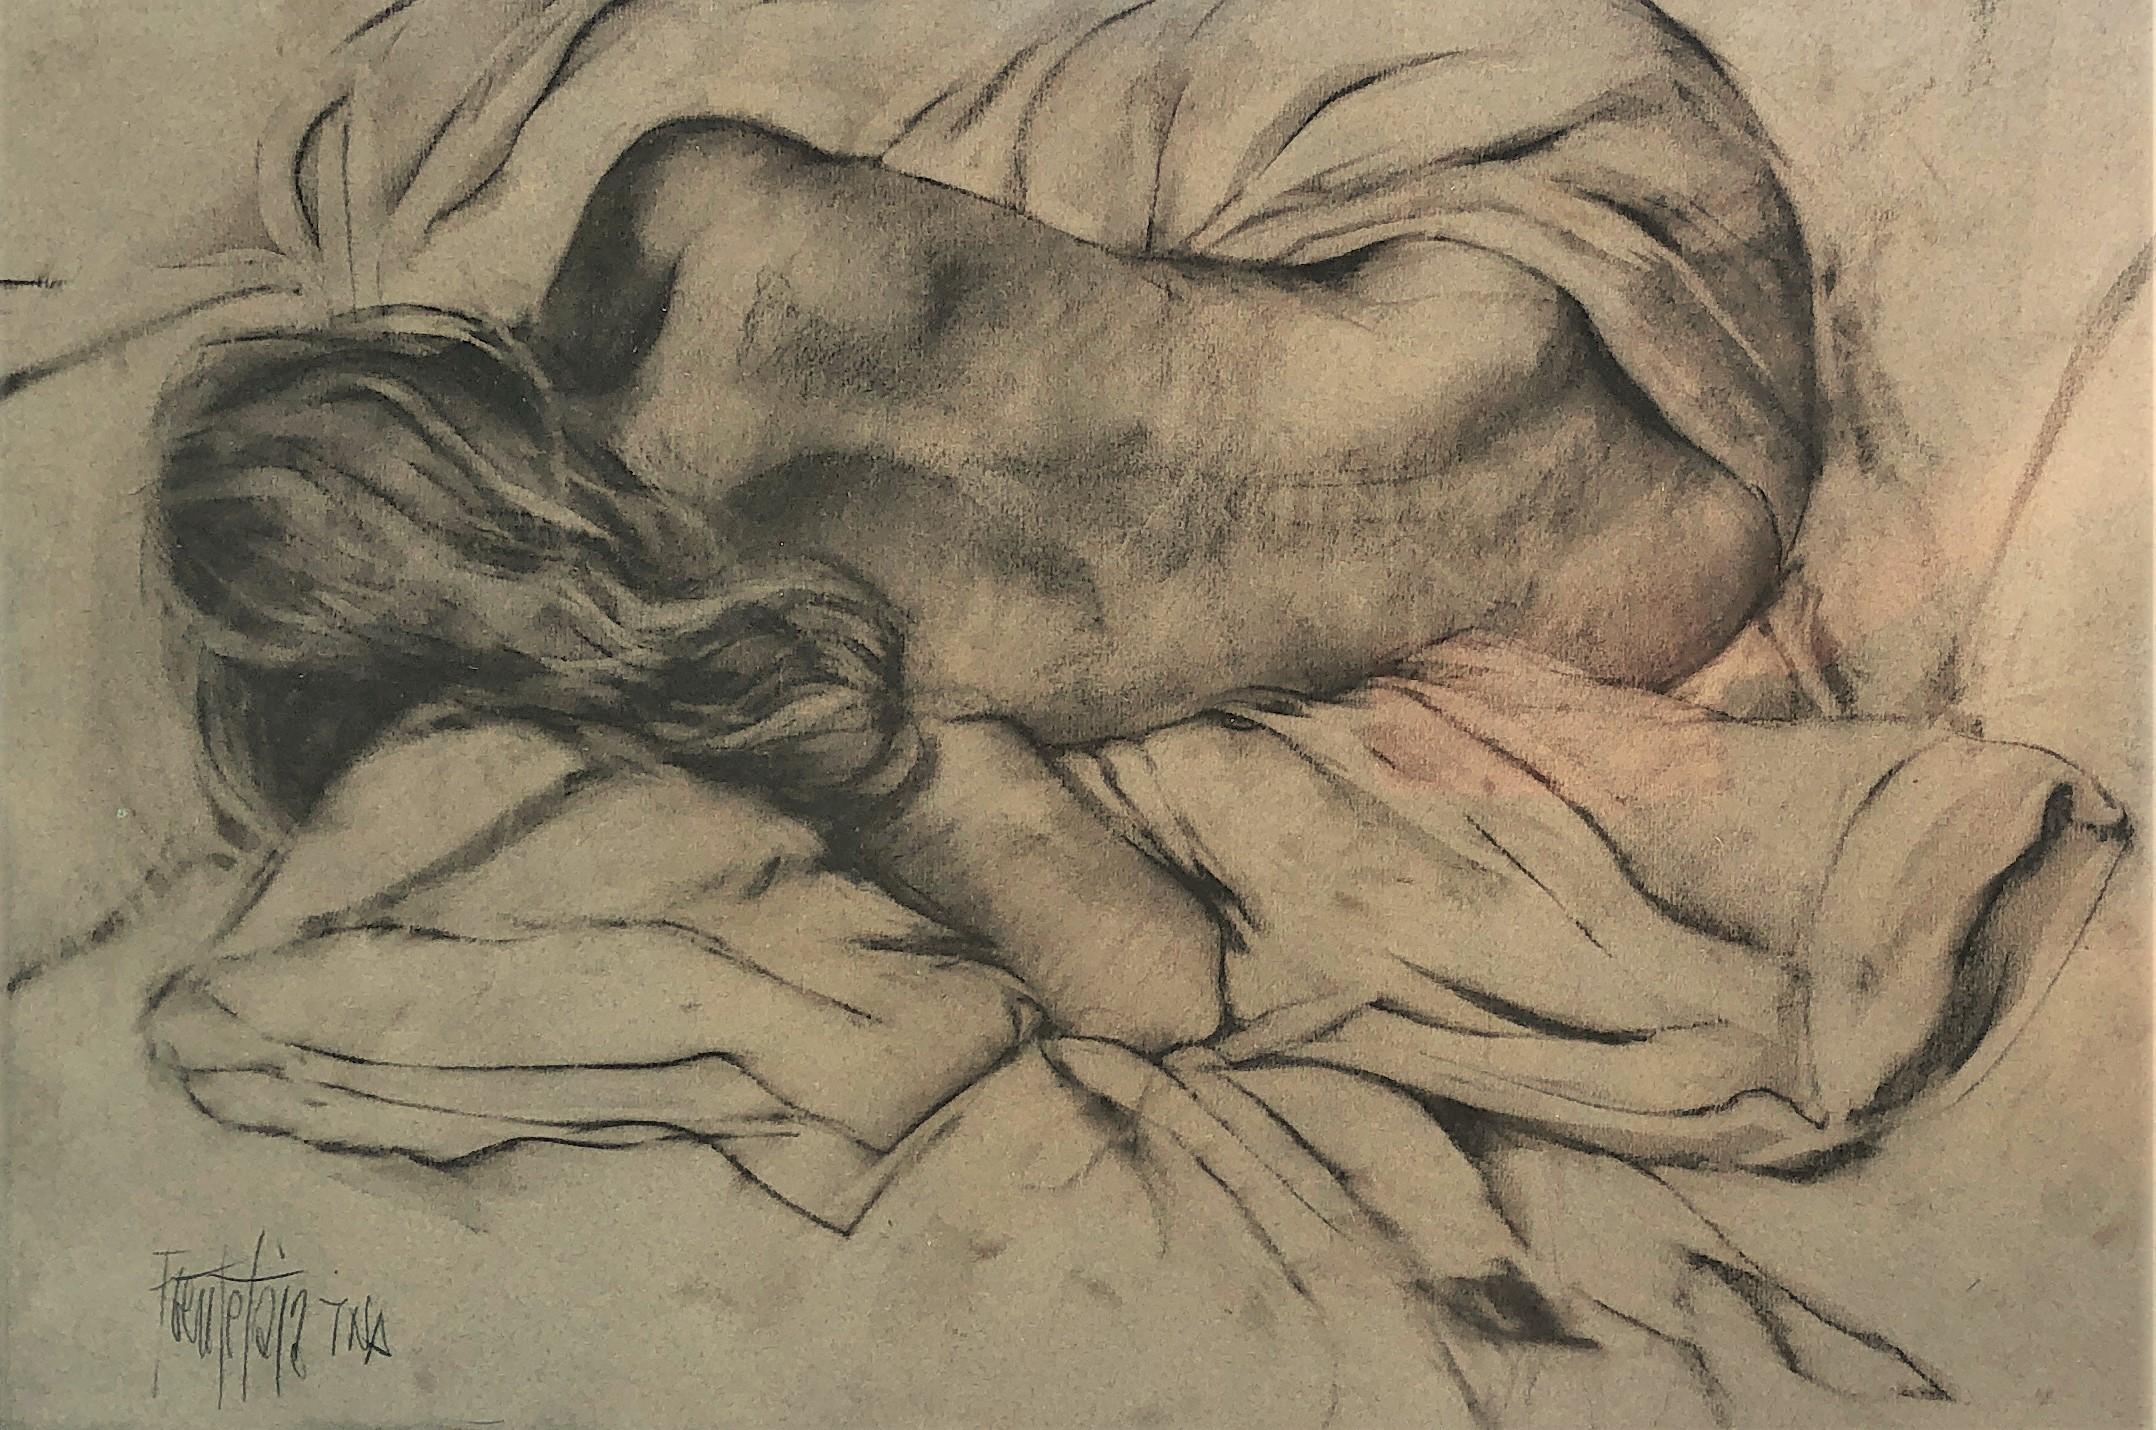 Nude woman charcoal drawing - Art by José Luis Fuentetaja